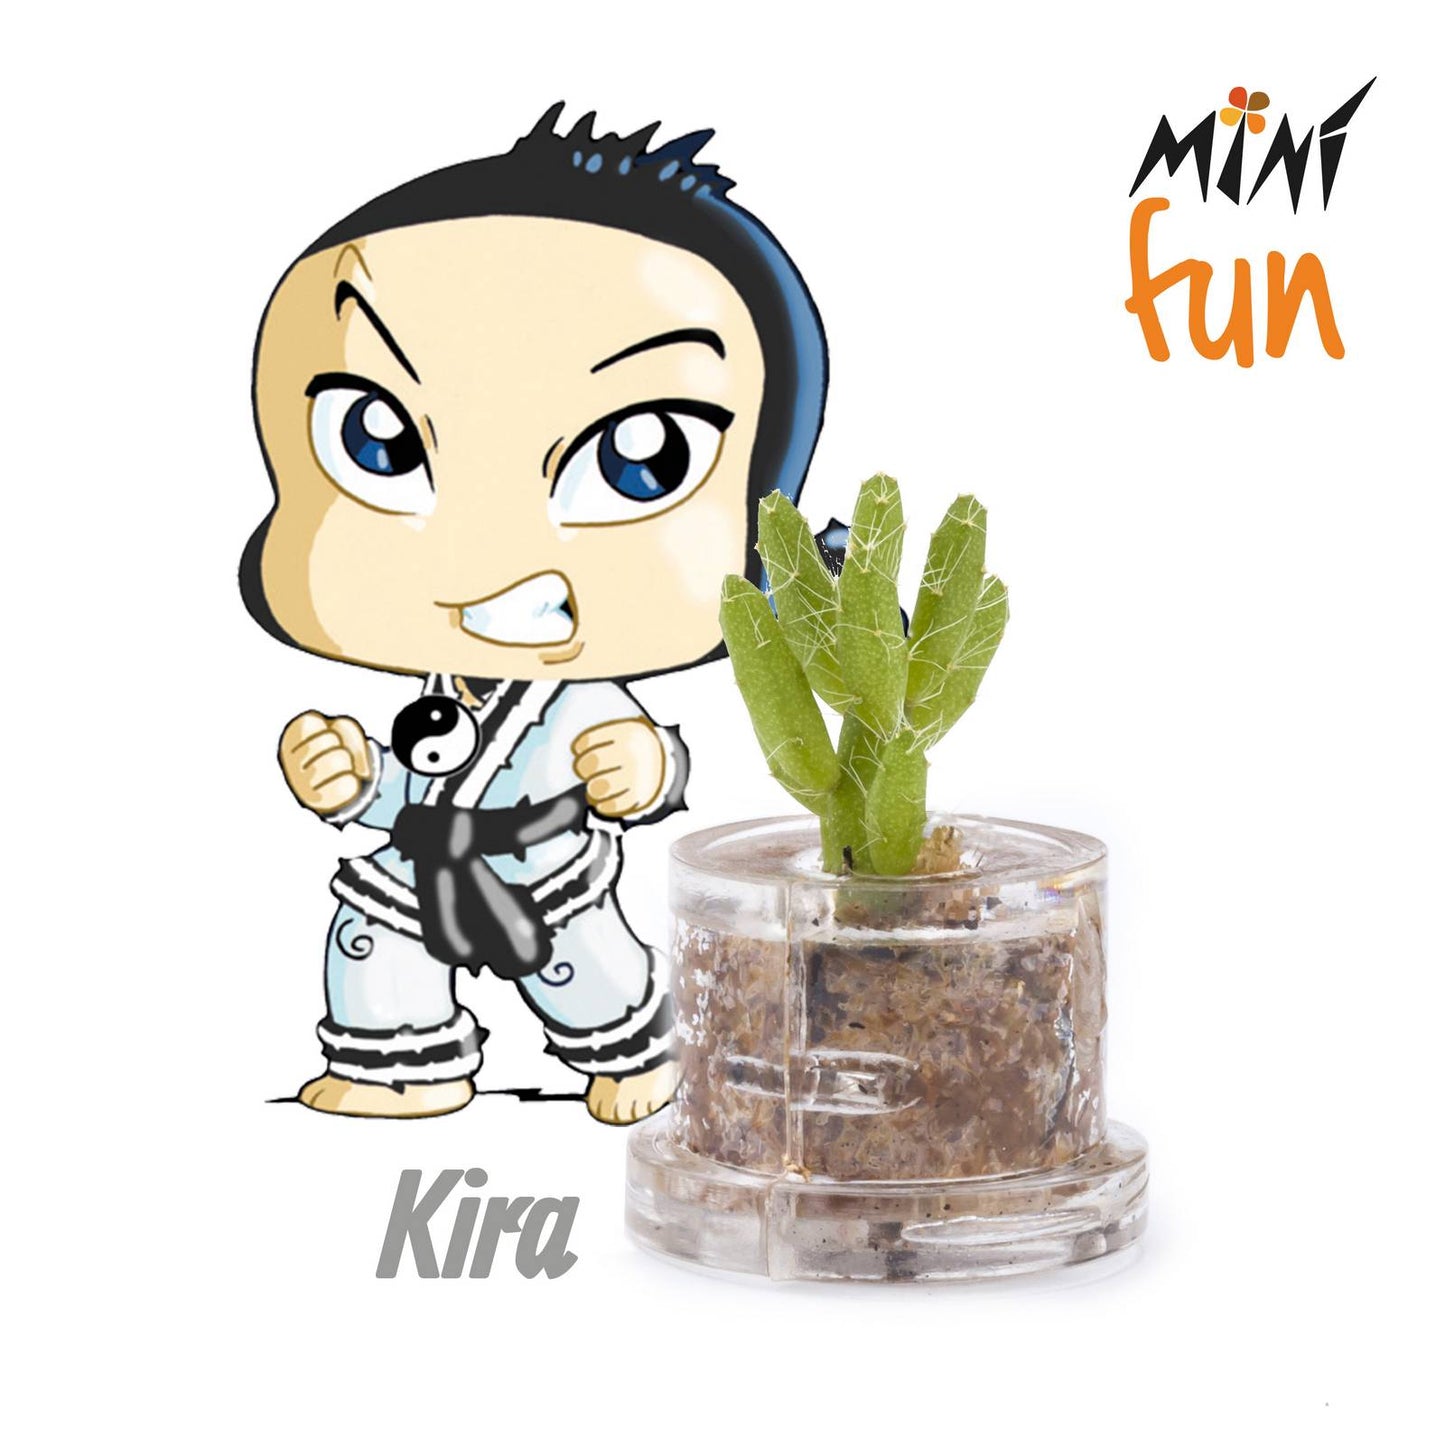 Minì Box Fun Kira - Mini pianta per i coraggiosi e i tenaci